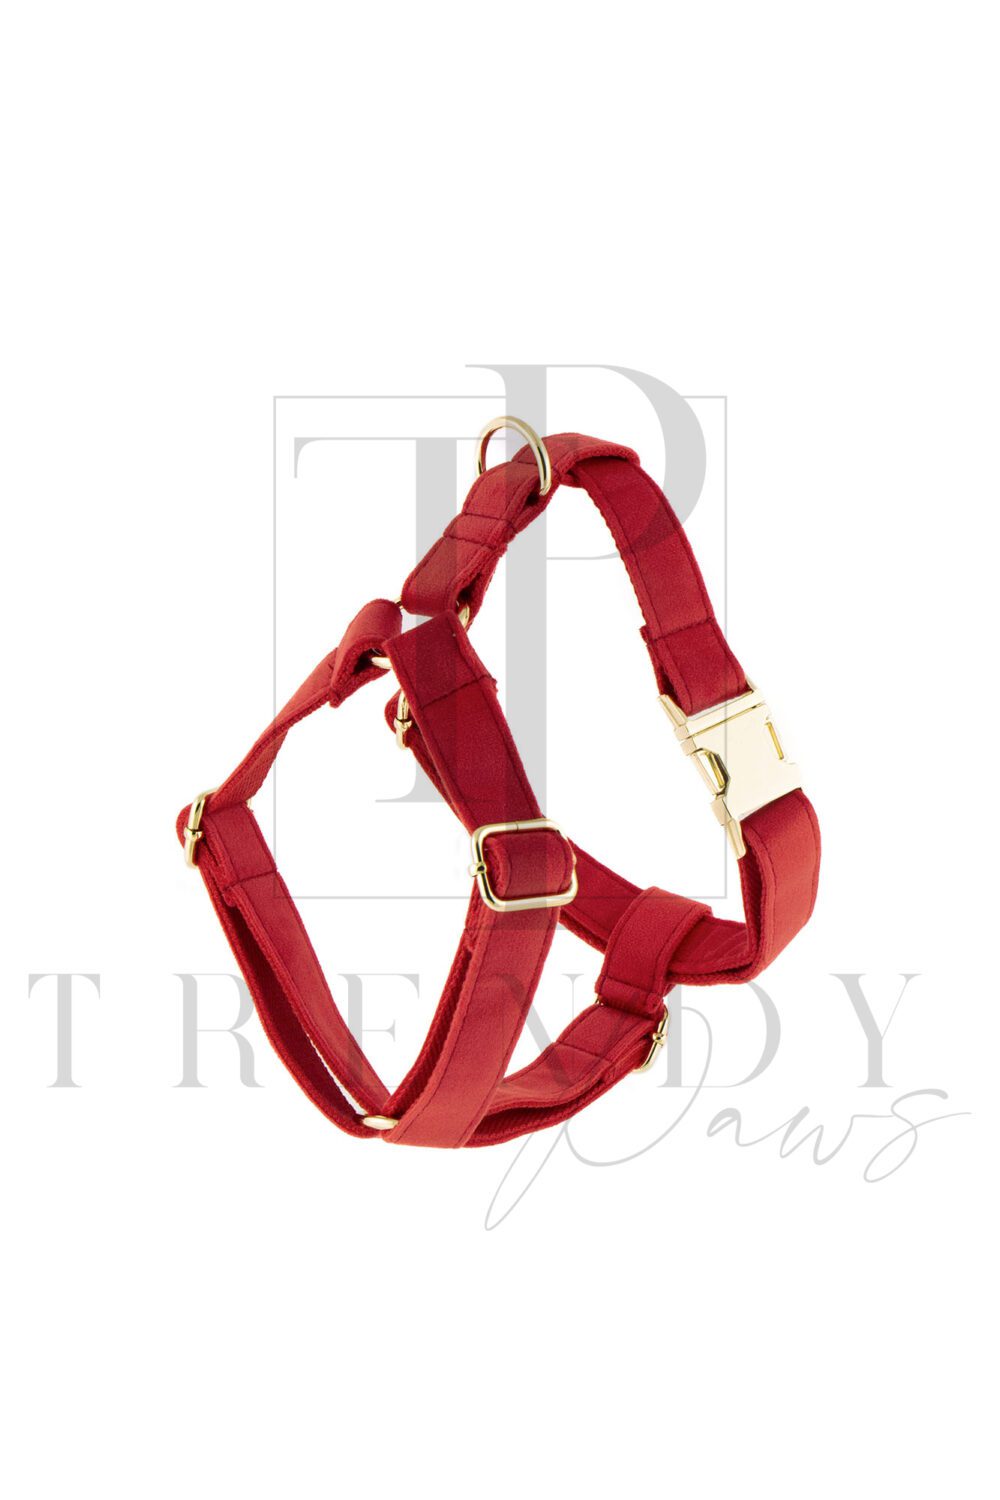 Red velvet soft dog harnesses harness